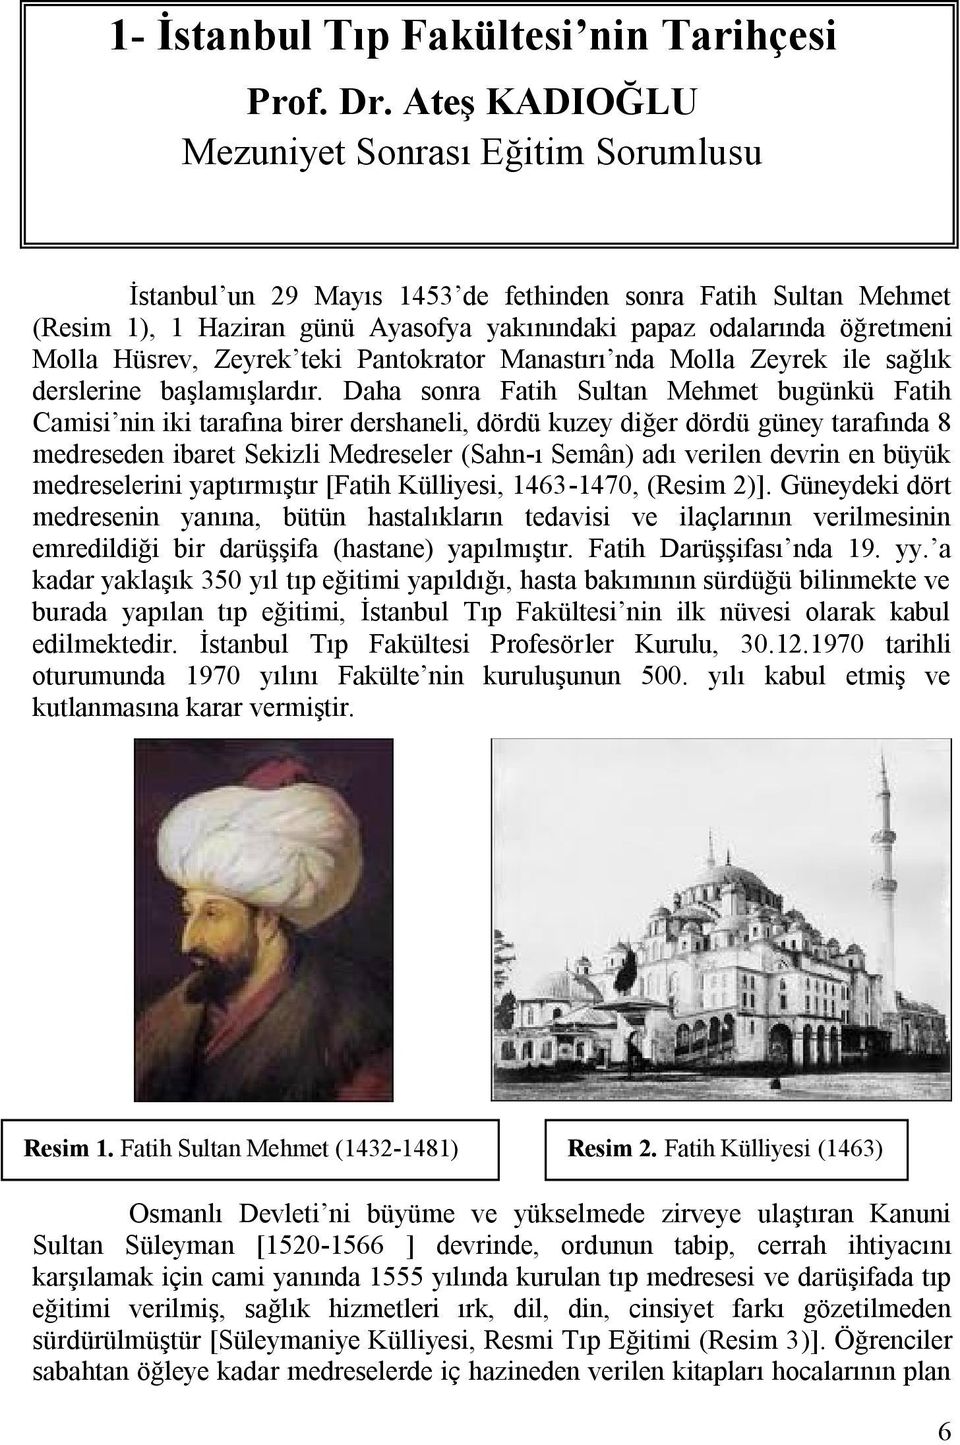 Hüsrev, Zeyrek teki Pantokrator Manastırı nda Molla Zeyrek ile sağlık derslerine başlamışlardır.